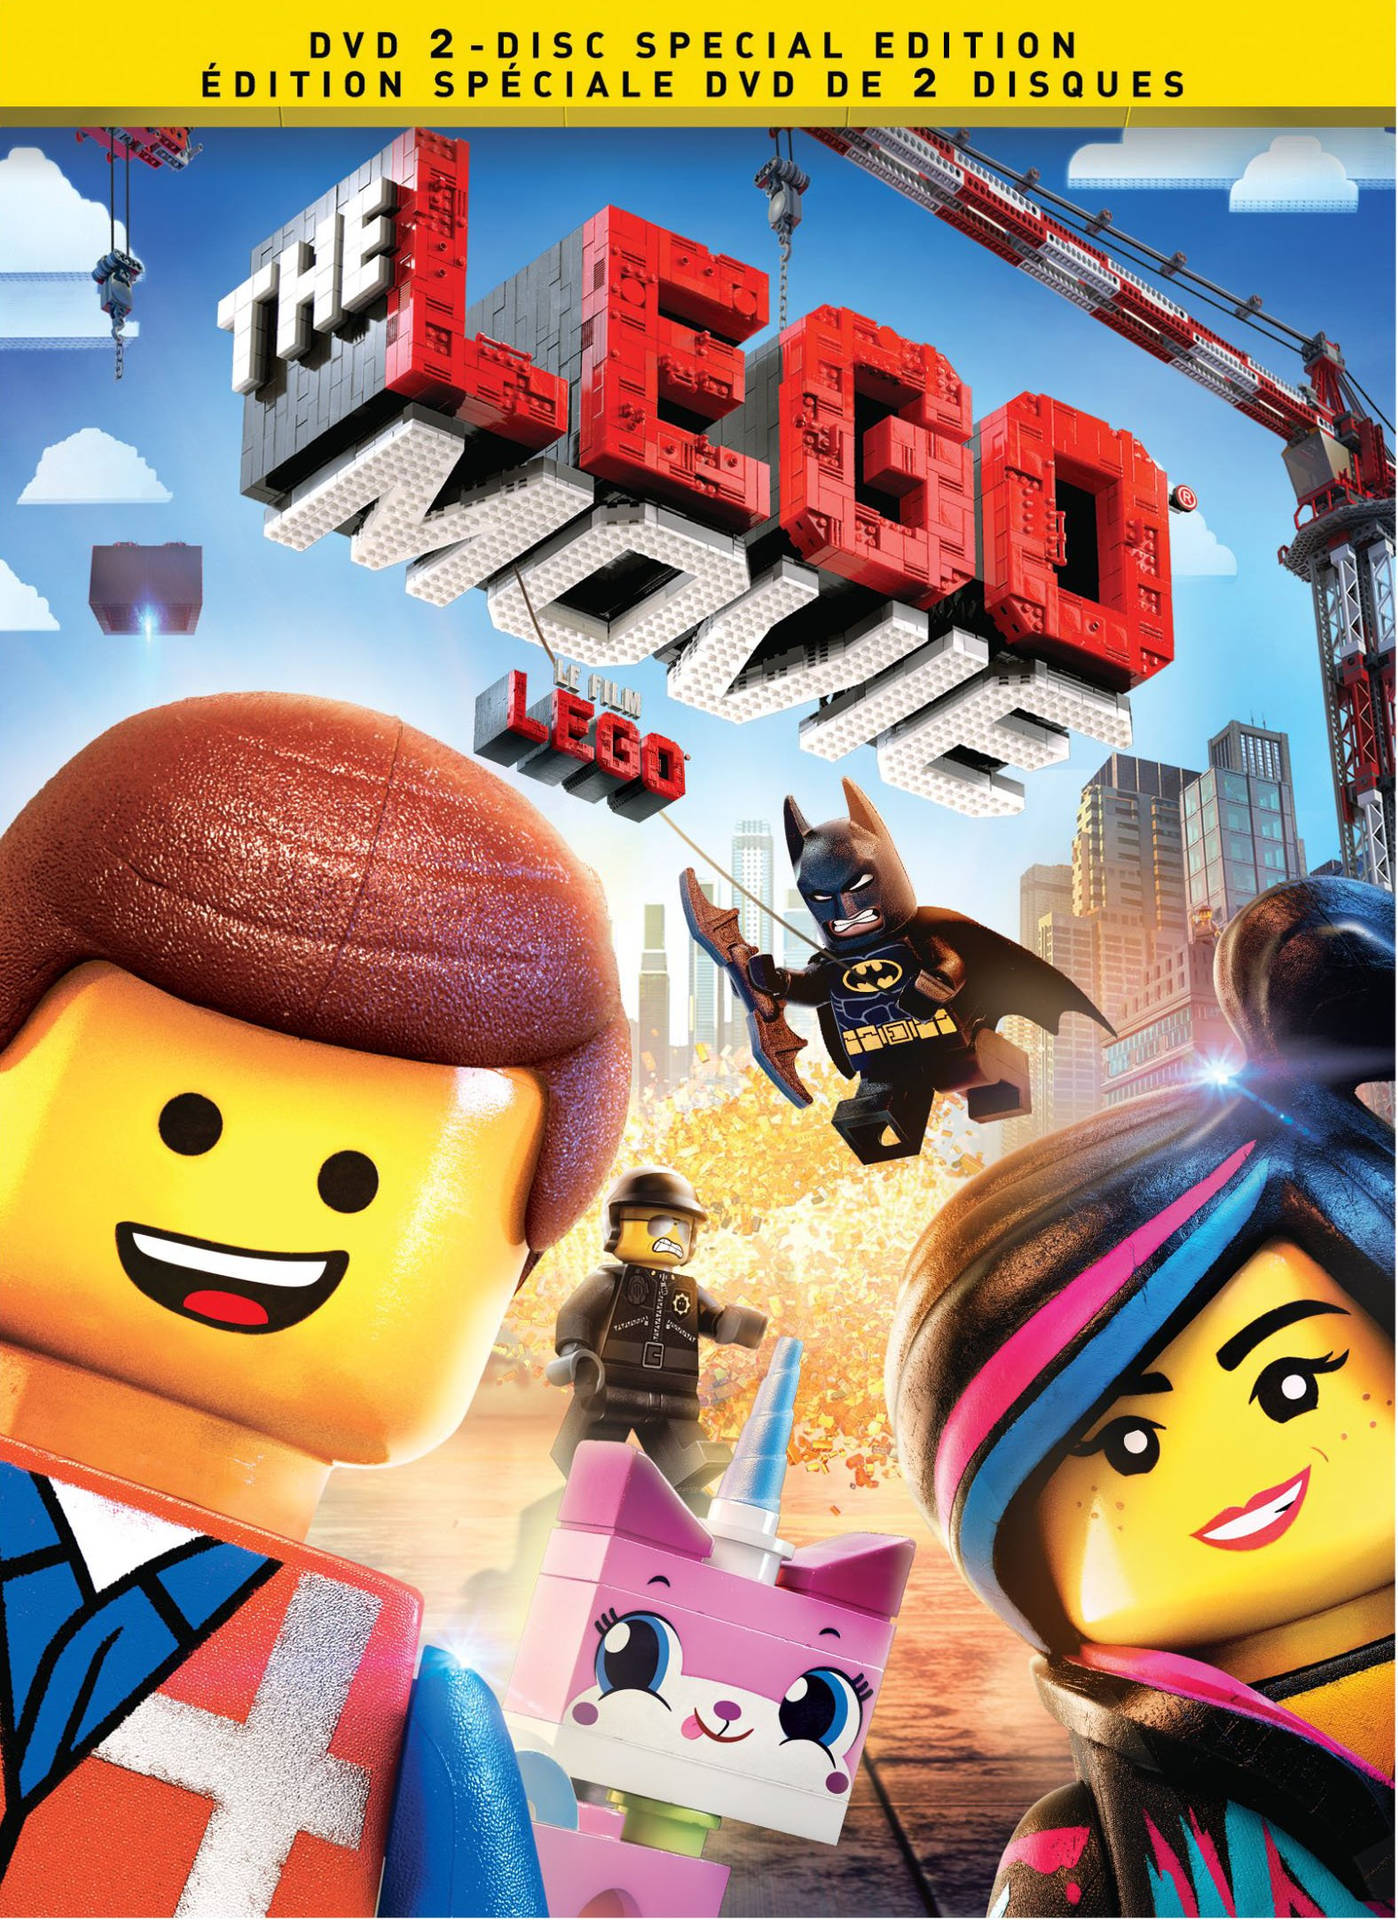 Der Lego Filmhintergrund